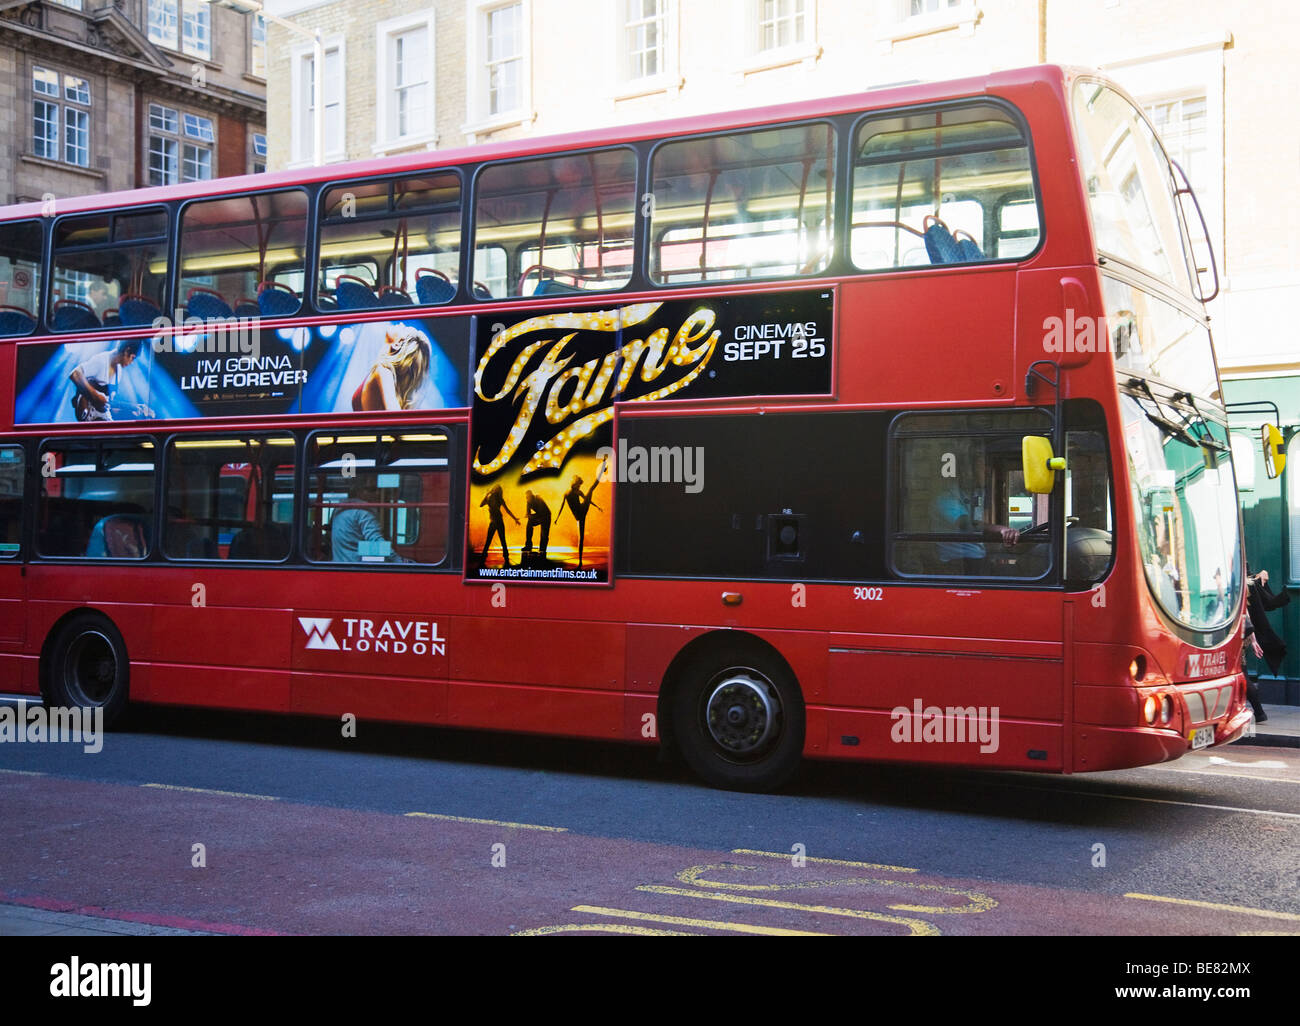 Einem roten Londoner Bus Werbung 2009 musical-Film, Ruhm. Tooley Street, London. VEREINIGTES KÖNIGREICH. Stockfoto